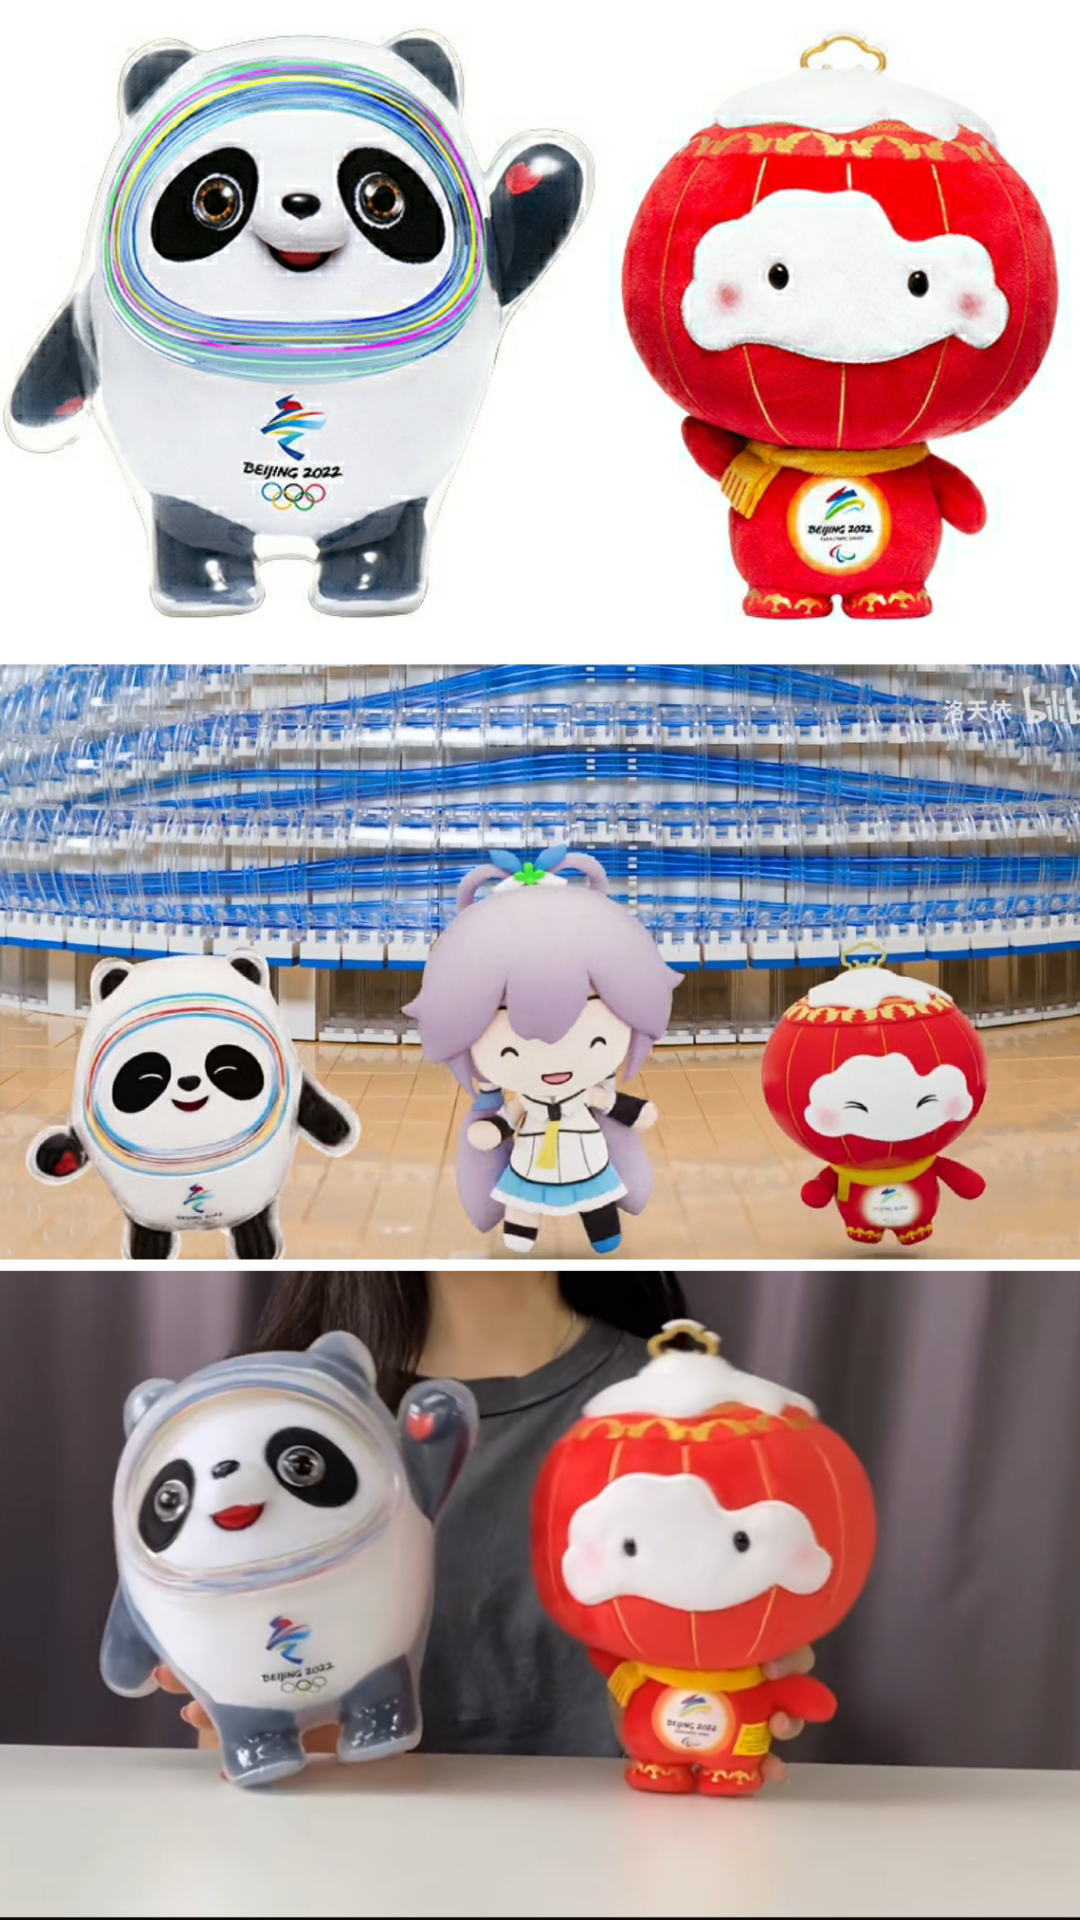 北京东奥会的吉祥物图片